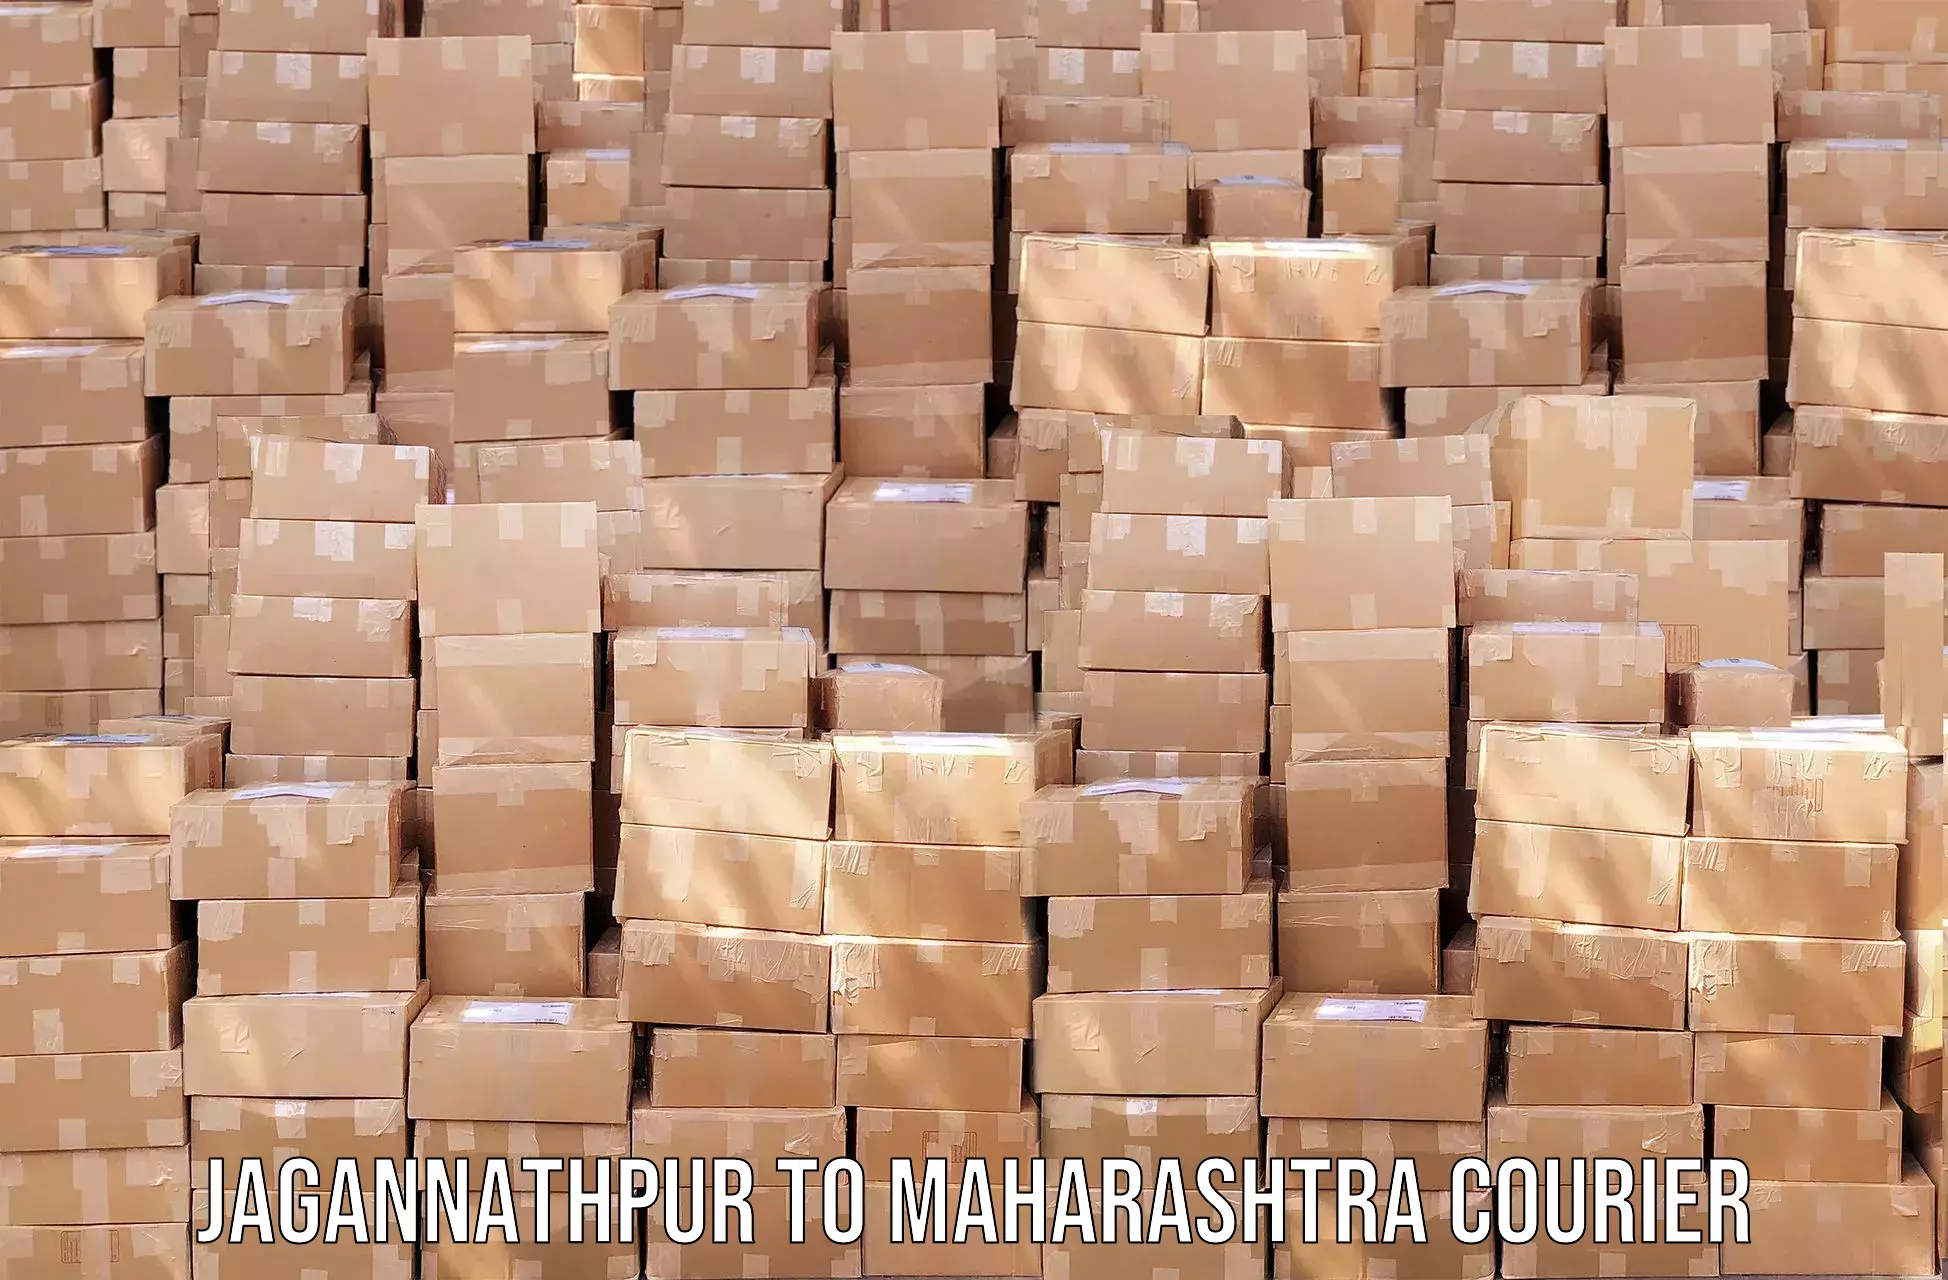 Discounted shipping Jagannathpur to Maharashtra